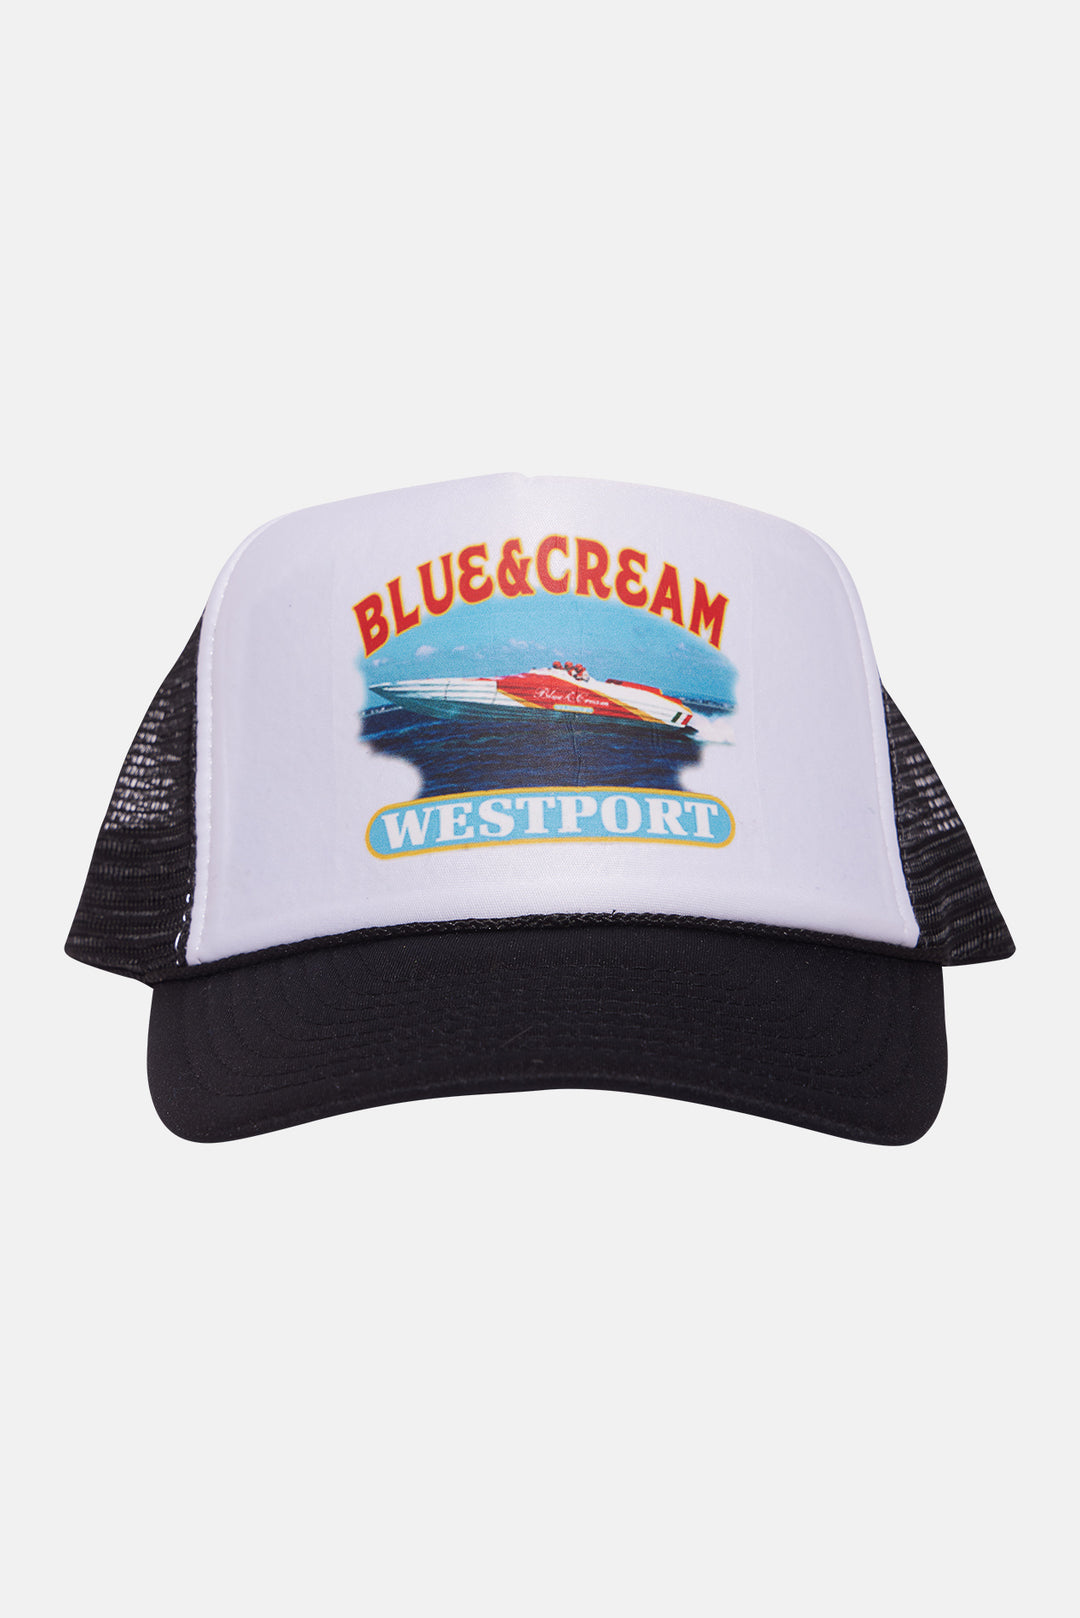 Westport Speed boat Mesh Trucker Hat Black/White